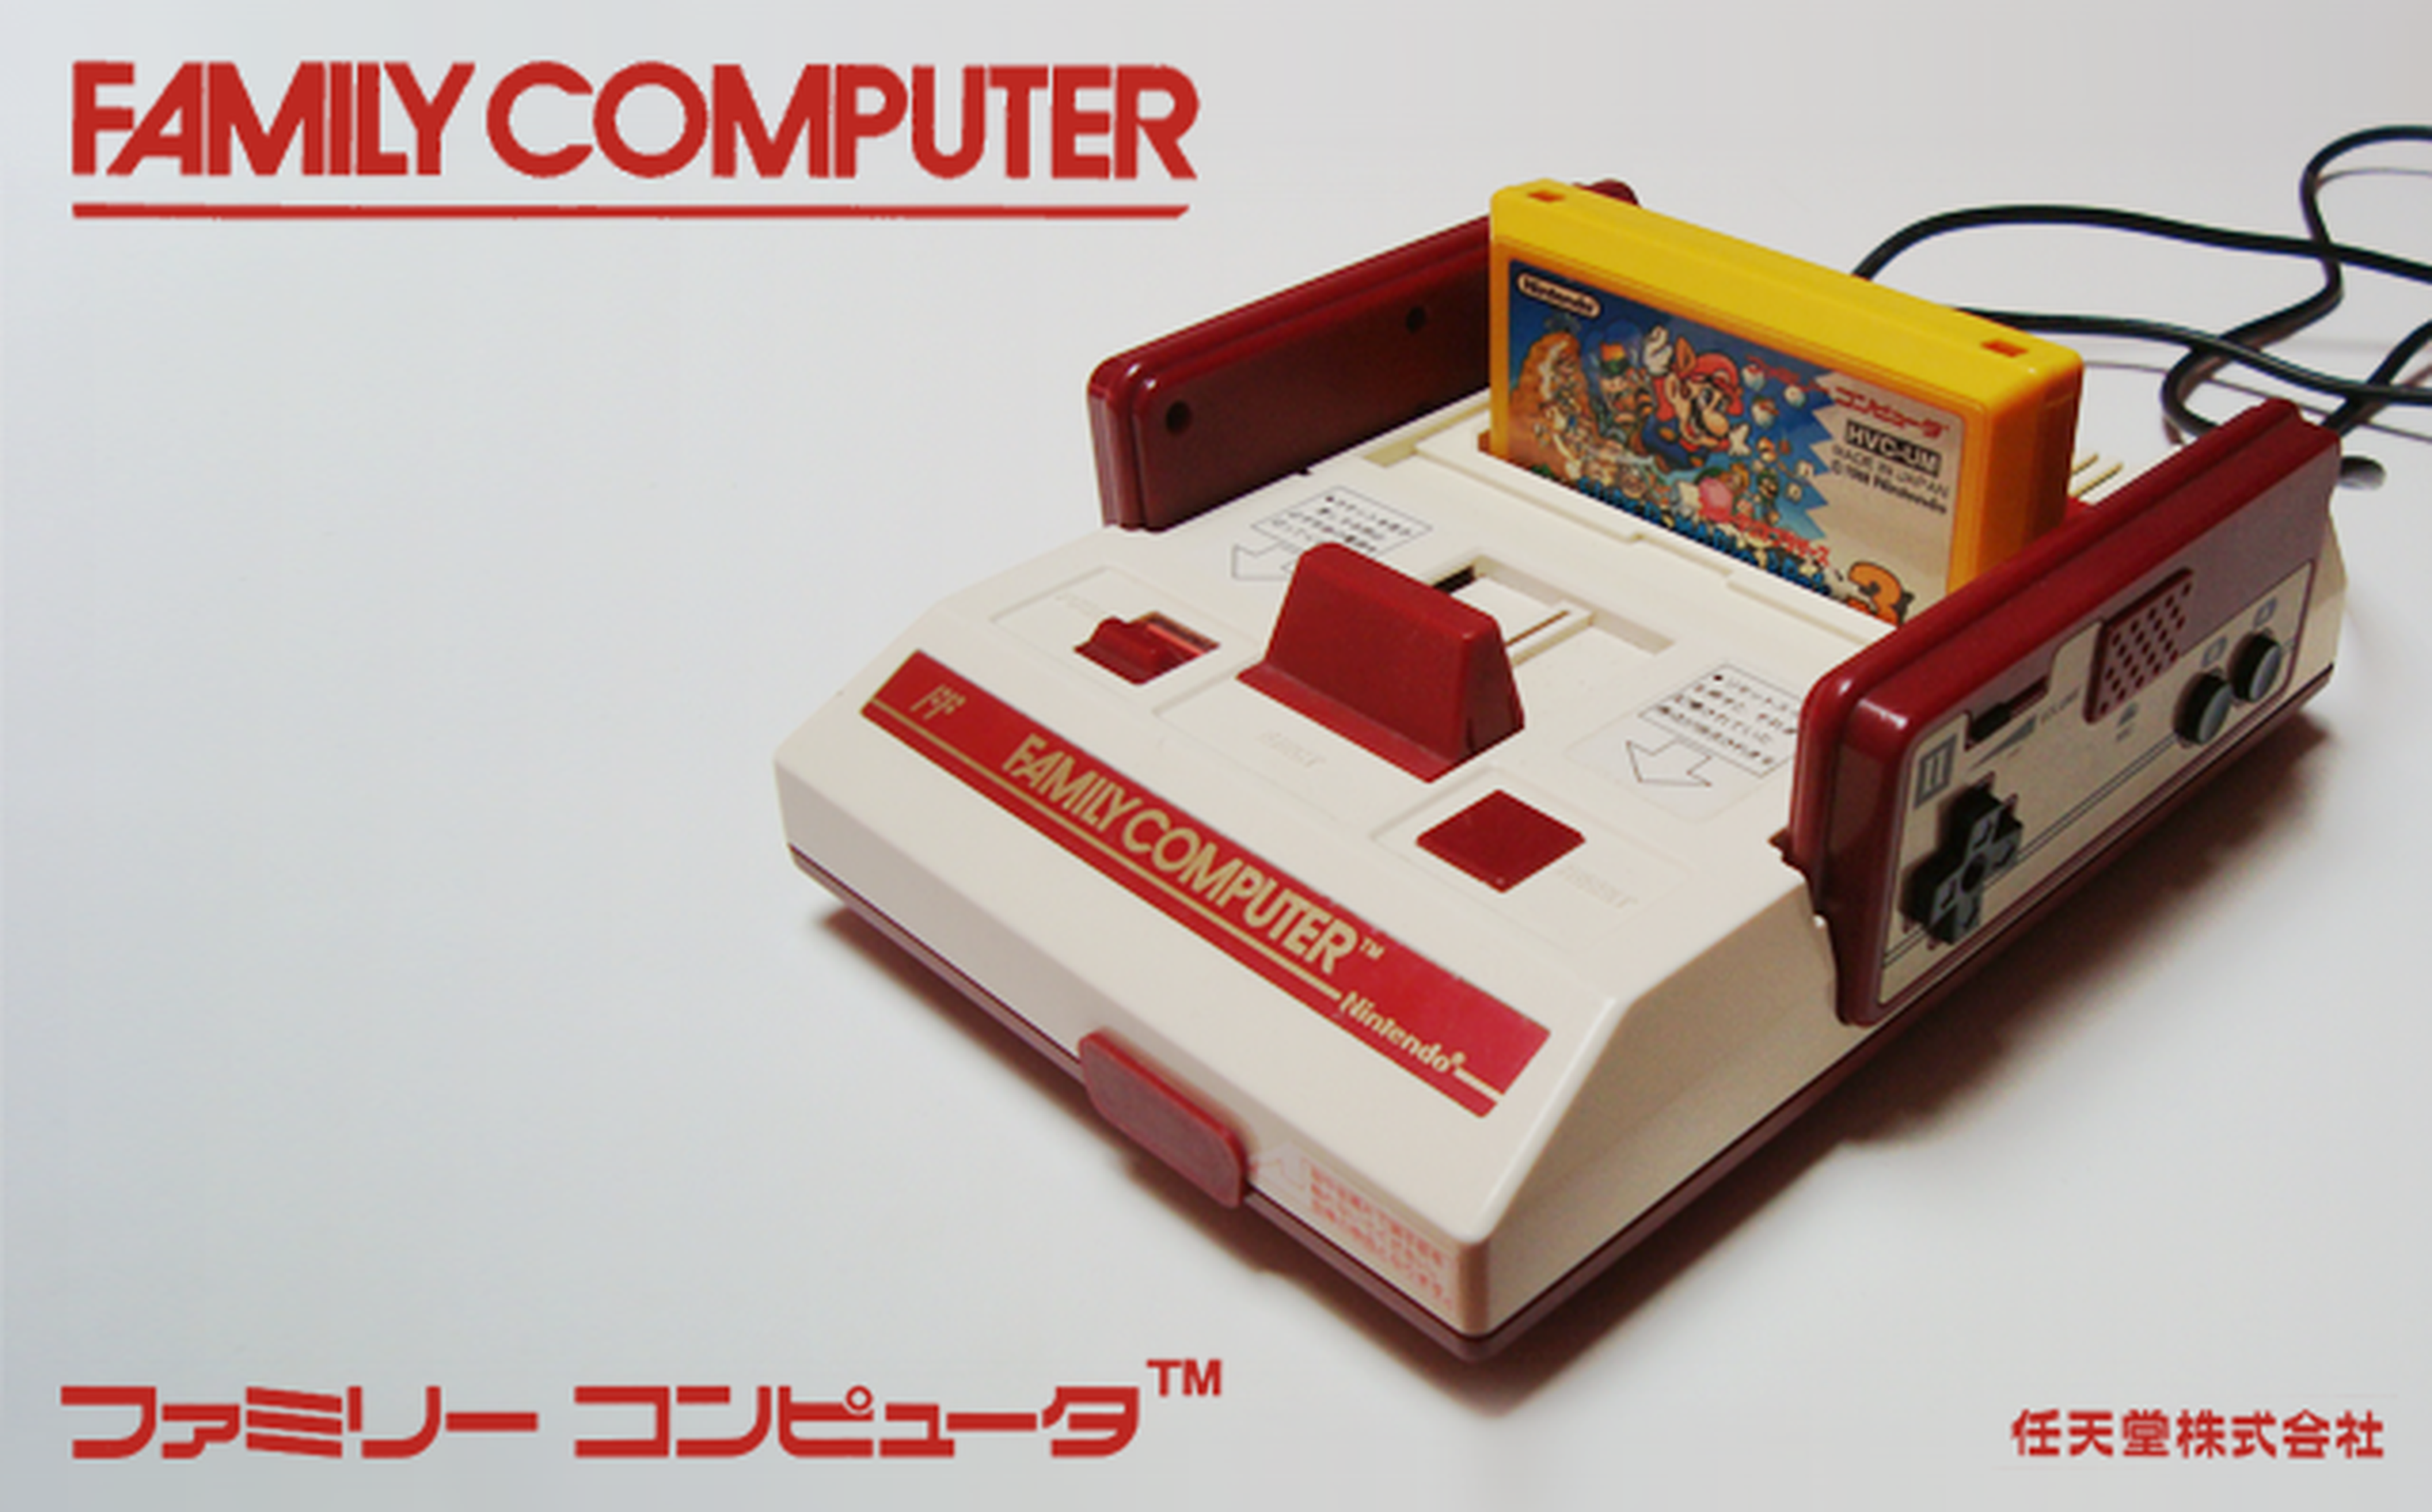 Se cumplen 32 años del lanzamiento de NES en Japón. ¡Felicidades!